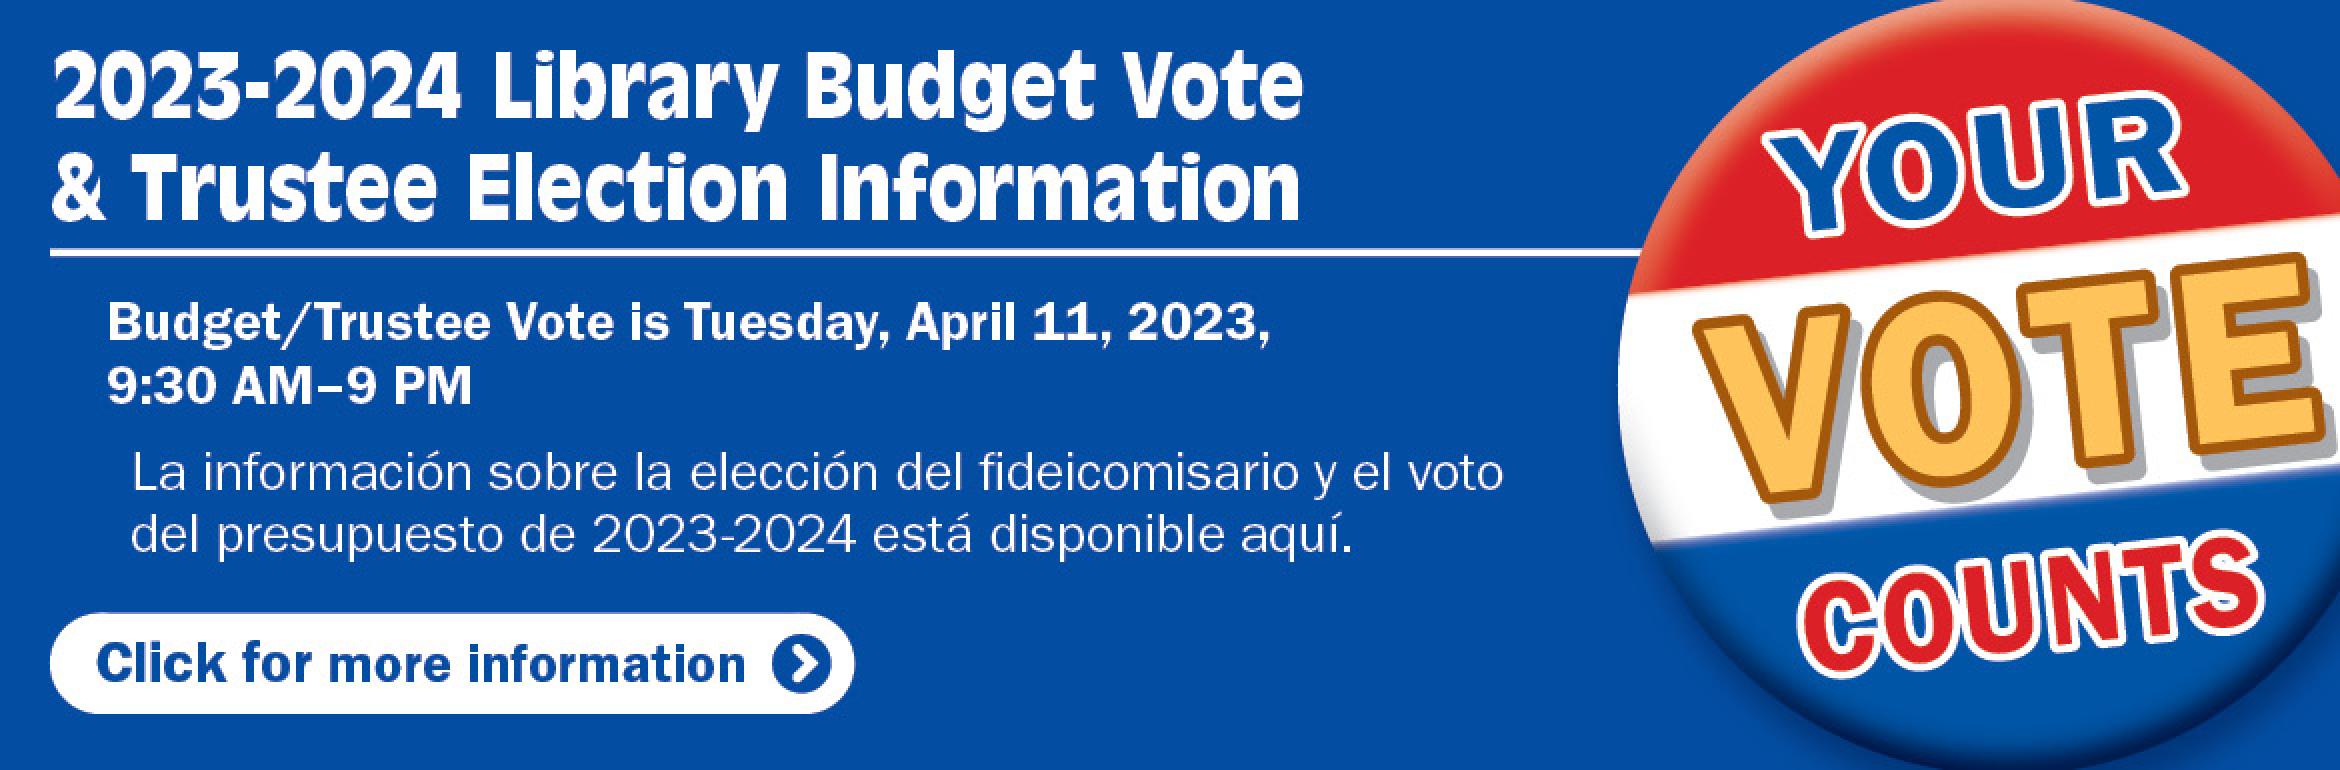 2023-2024 Library Budget Vote & Trustee Election Information. Budget/Trustee Vote is Tuesday, April 11, 2023, 9:30 AM–9 PM. La información sobre la elección del fideicomisario y el voto del presupuesto de 2023-2024 está disponible aquí. Your vote counts. Click for more information.